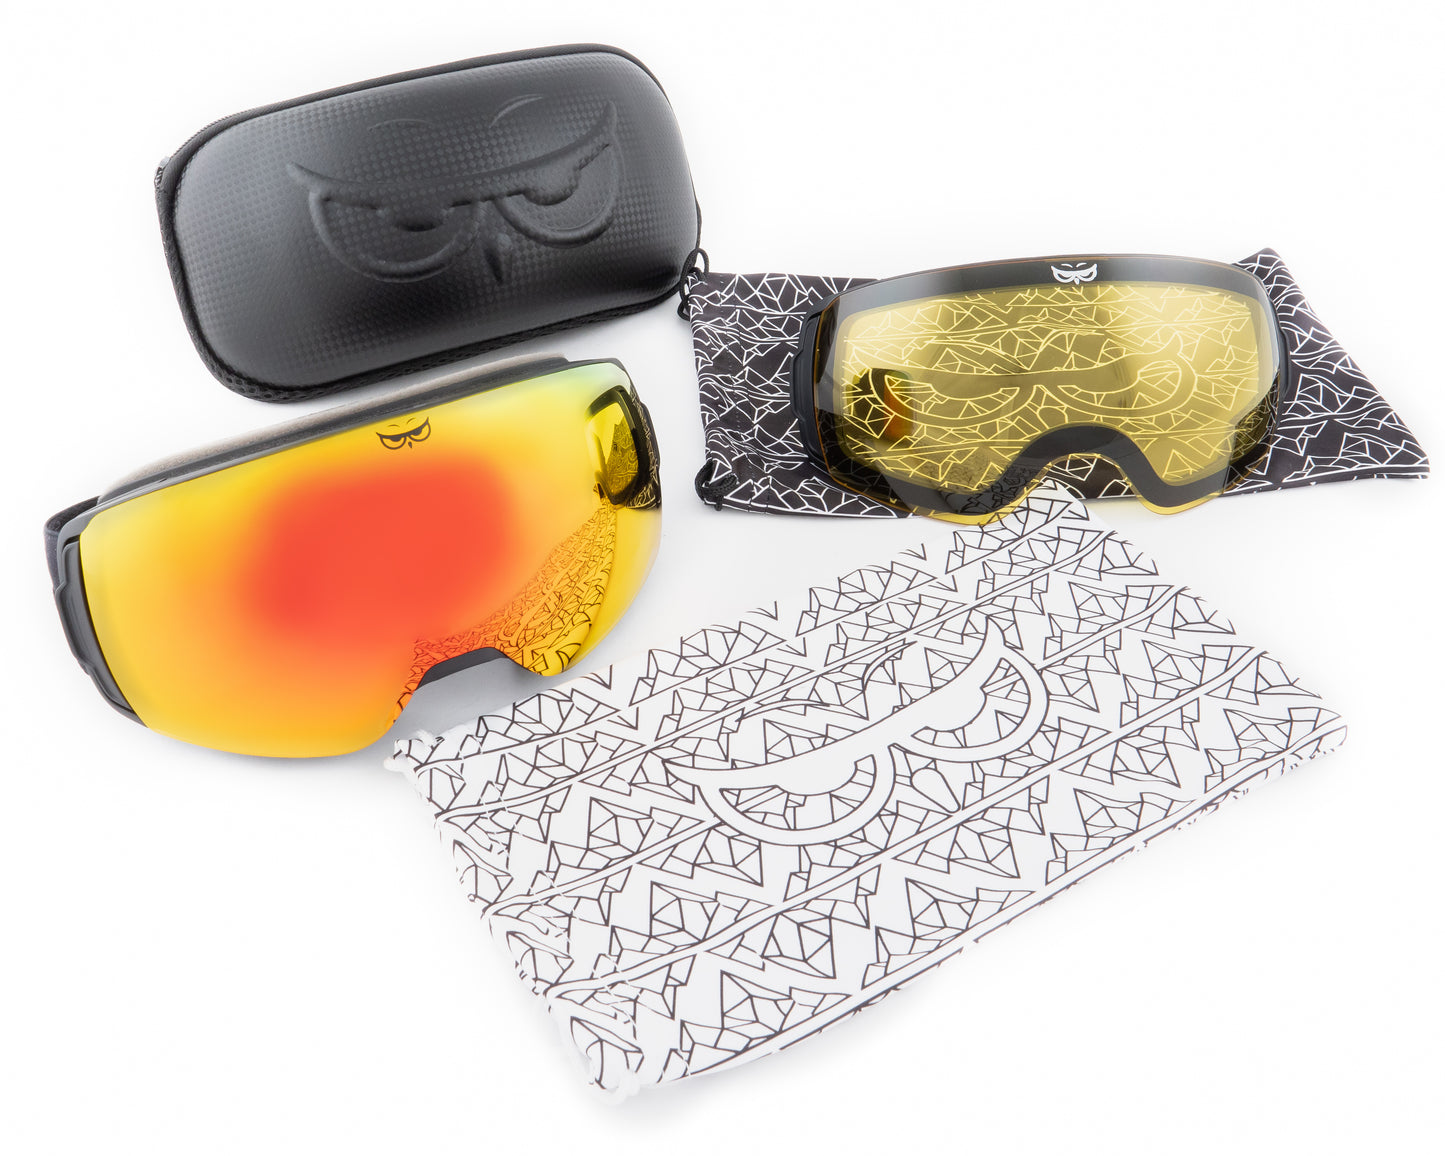 Gnarly Owl polarizační lyžařské snowboardové skialpové splitboardové brýle česká značka červený rudý zrcadlový REVO zorník součást balení čistící pytlík obal náhradní žlutý rozjasňovací zorník pevné ultralehké pouzdro